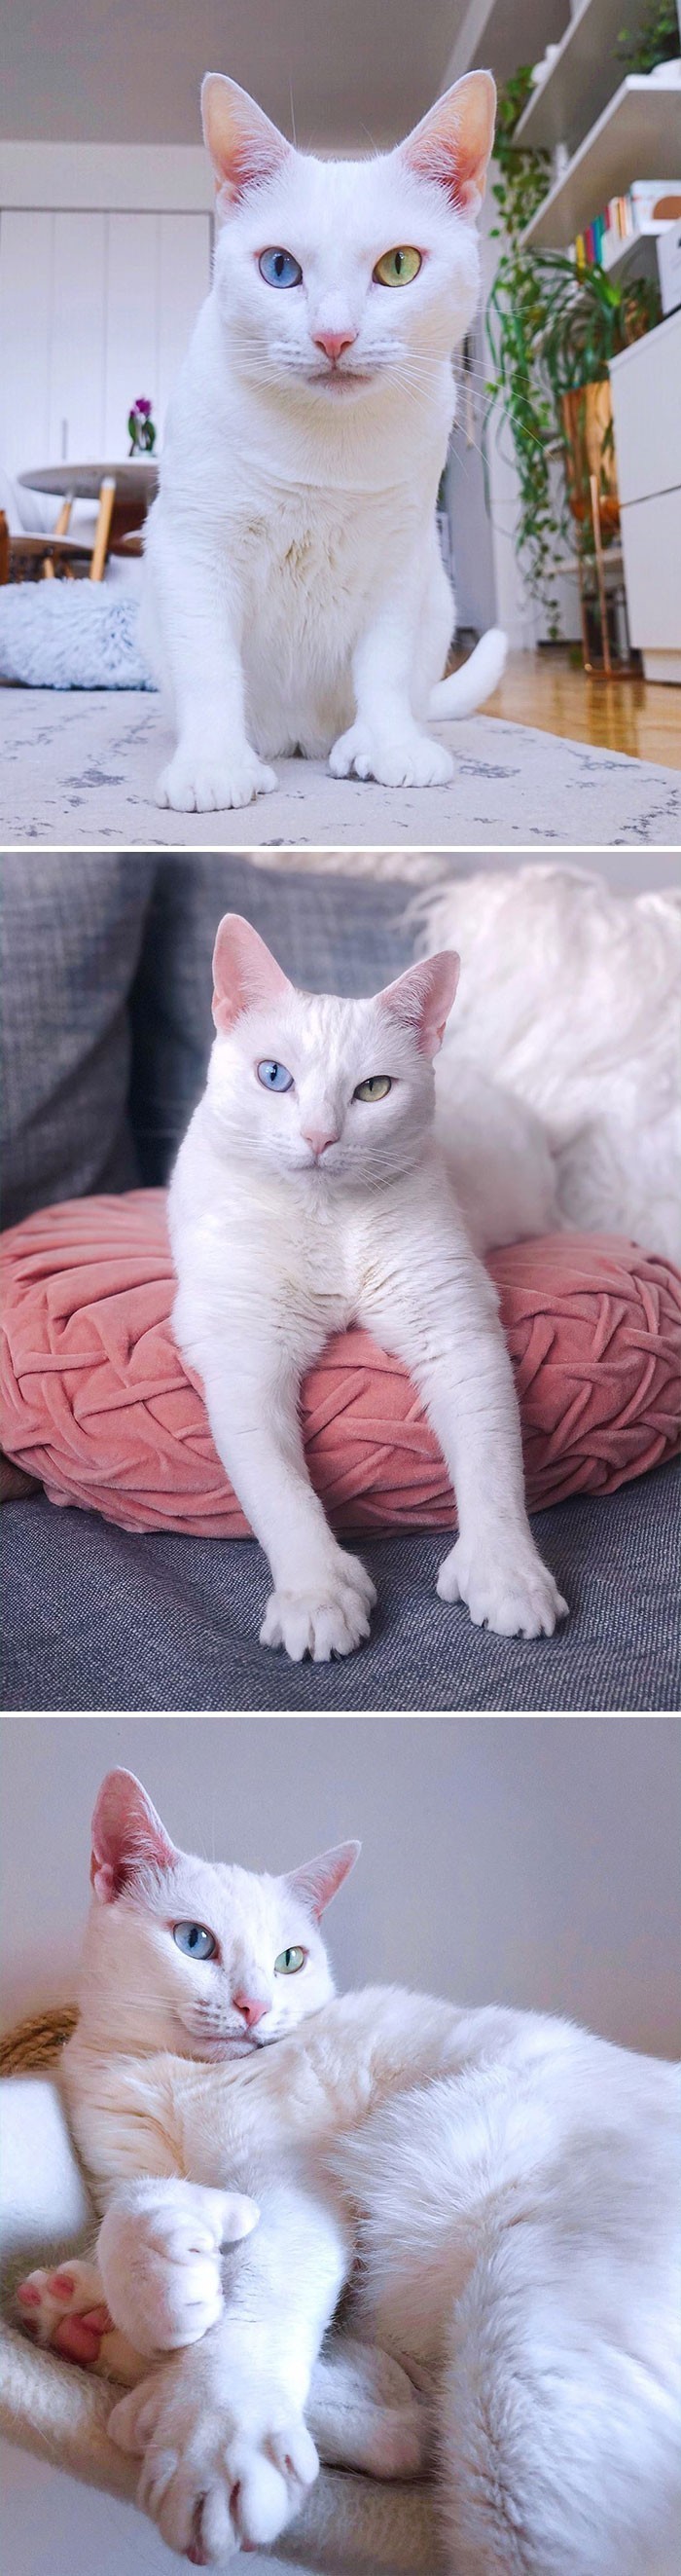 12. Sansa to kotka cierpiąca na przeczulicę. Wyróżnia się różnokolorowymi oczami i większą liczbą palców.